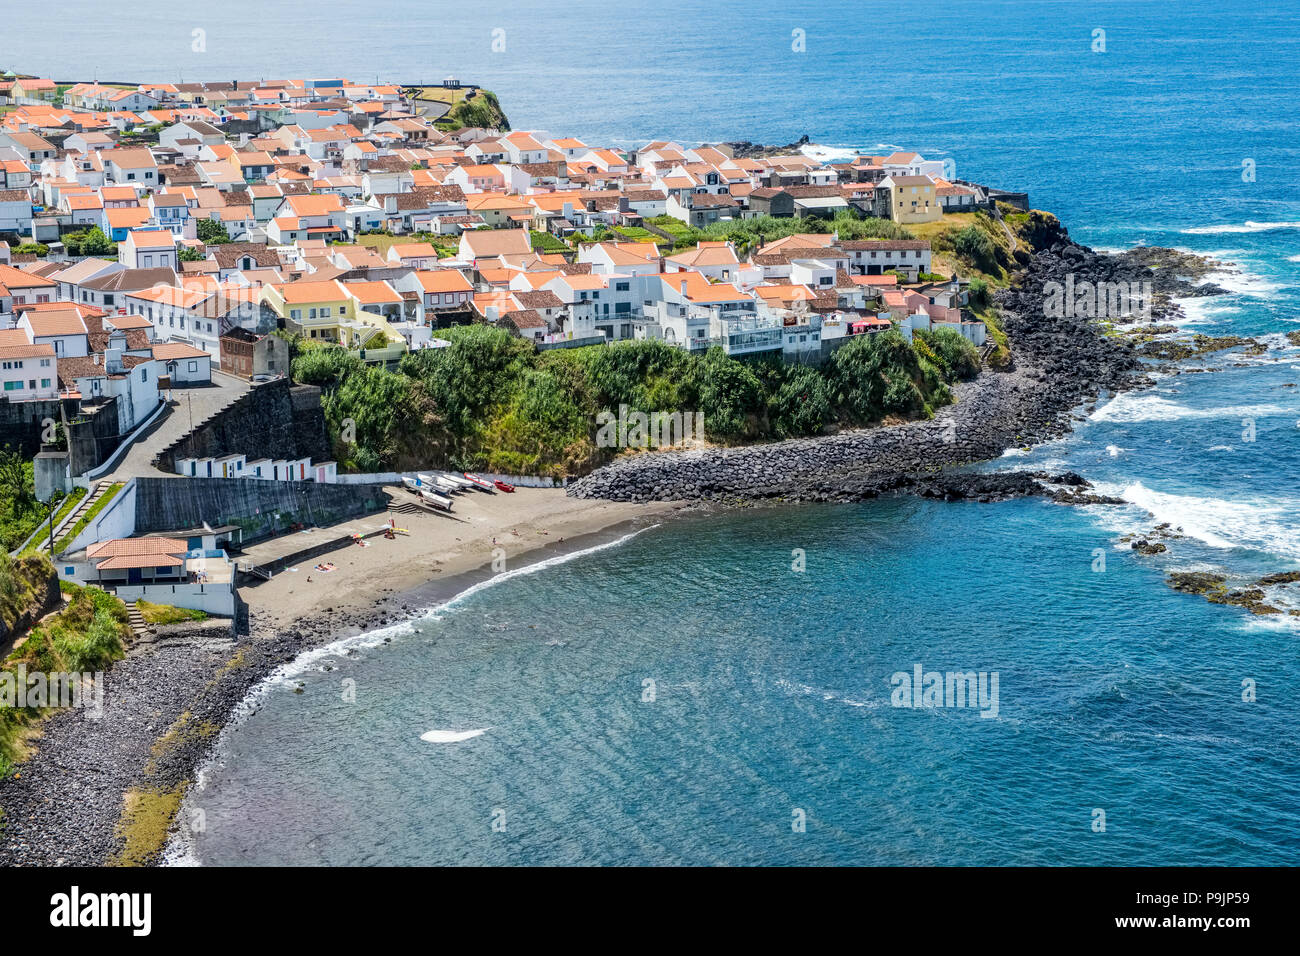 La aldea costera de Maia, en el norte de la costa de Sao Miguel, Azores Foto de stock